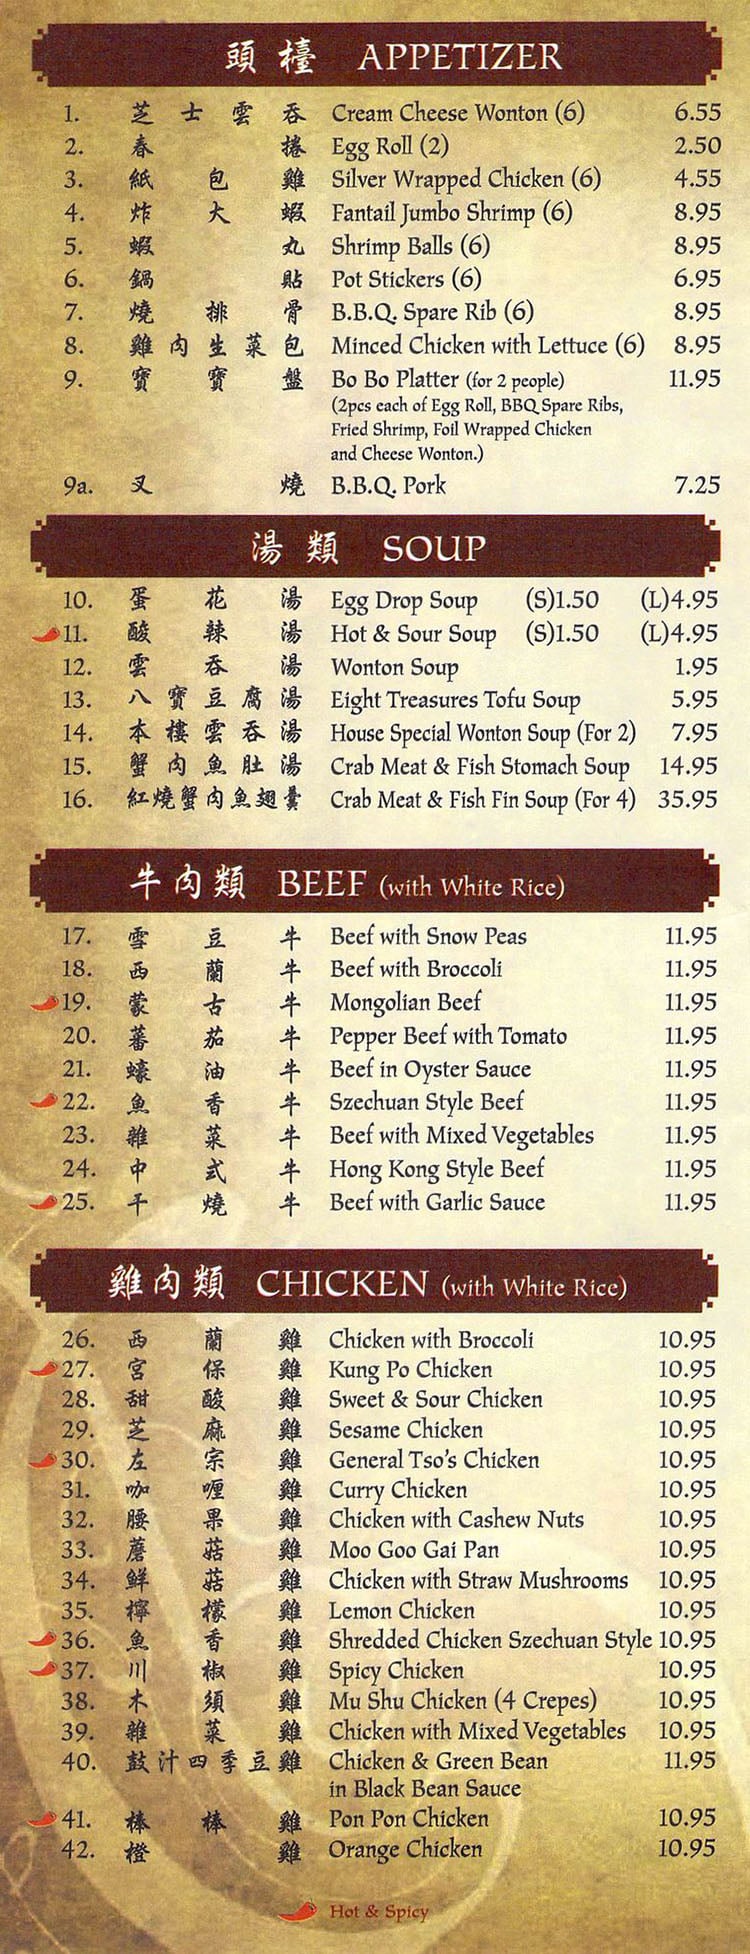 New Golden Dragon menu – SLC menu